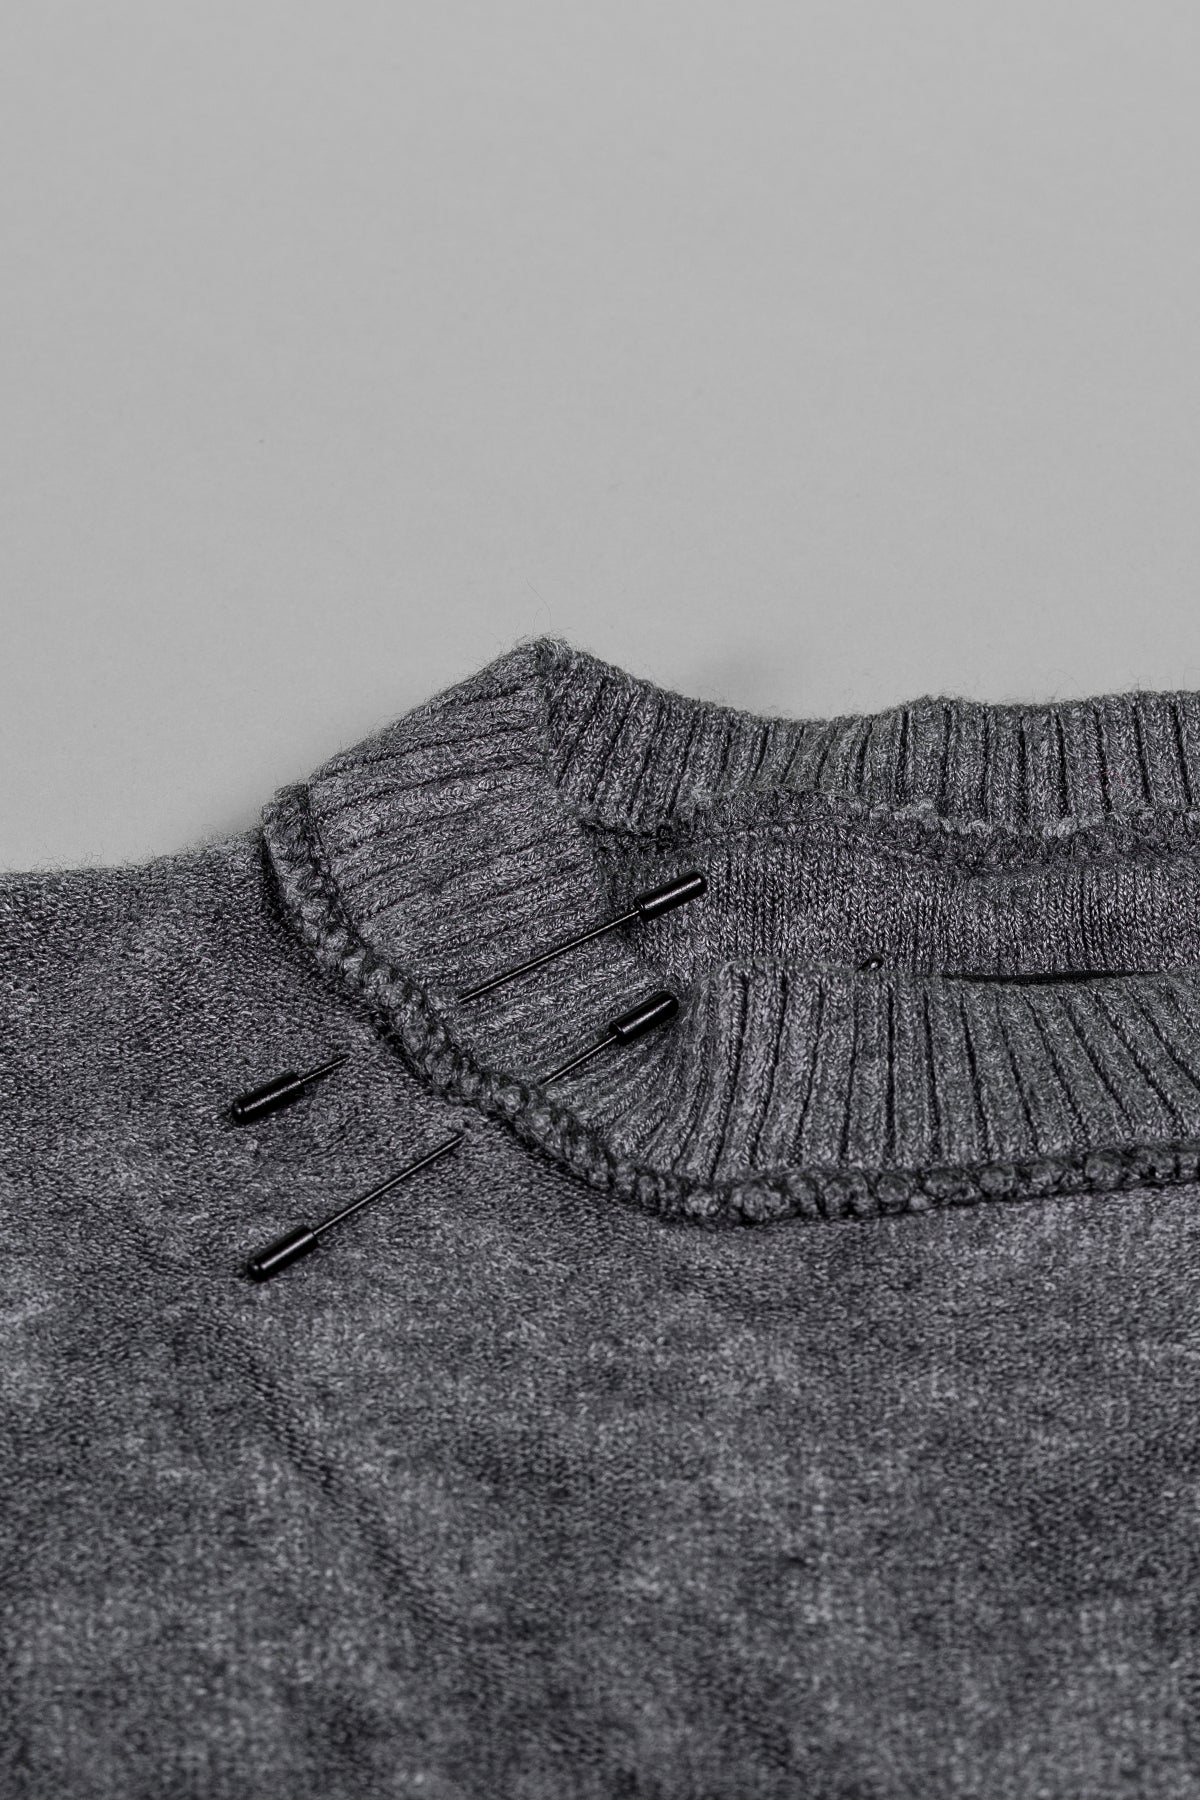 Barbarossa Moratti | Men's Avant-Garde Fashion Sweater